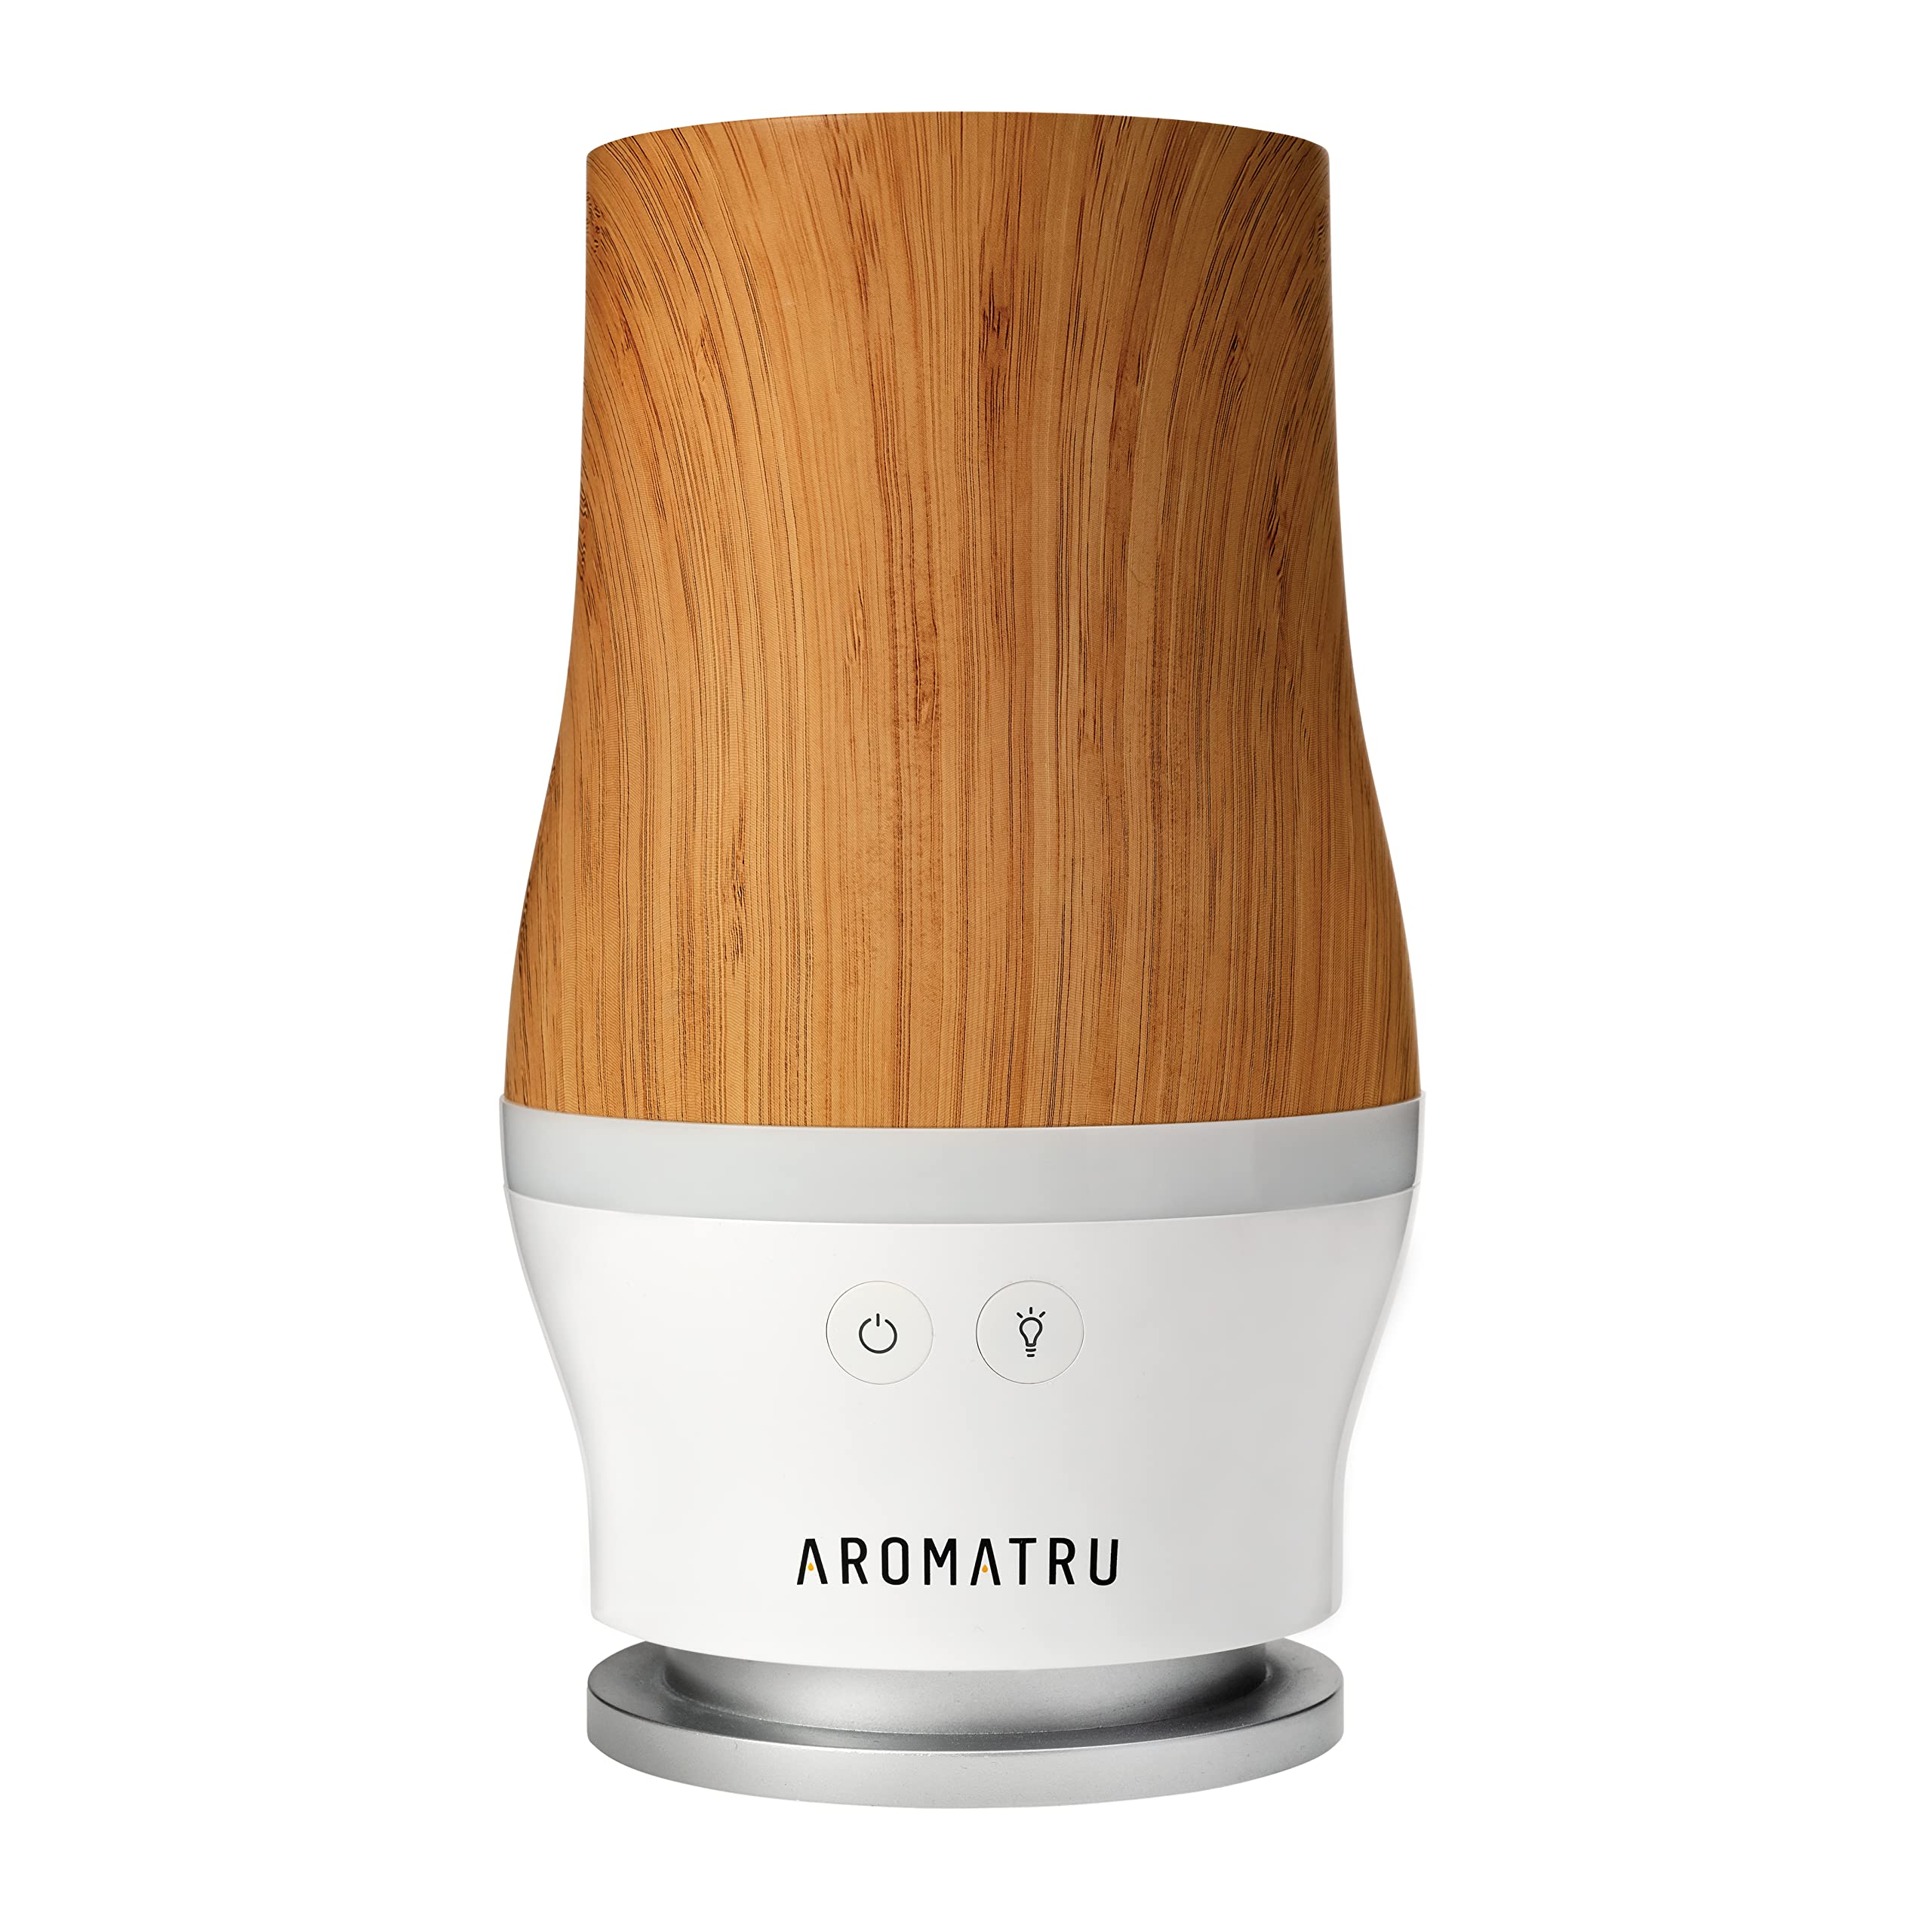 AromaTru essential oil diffuser